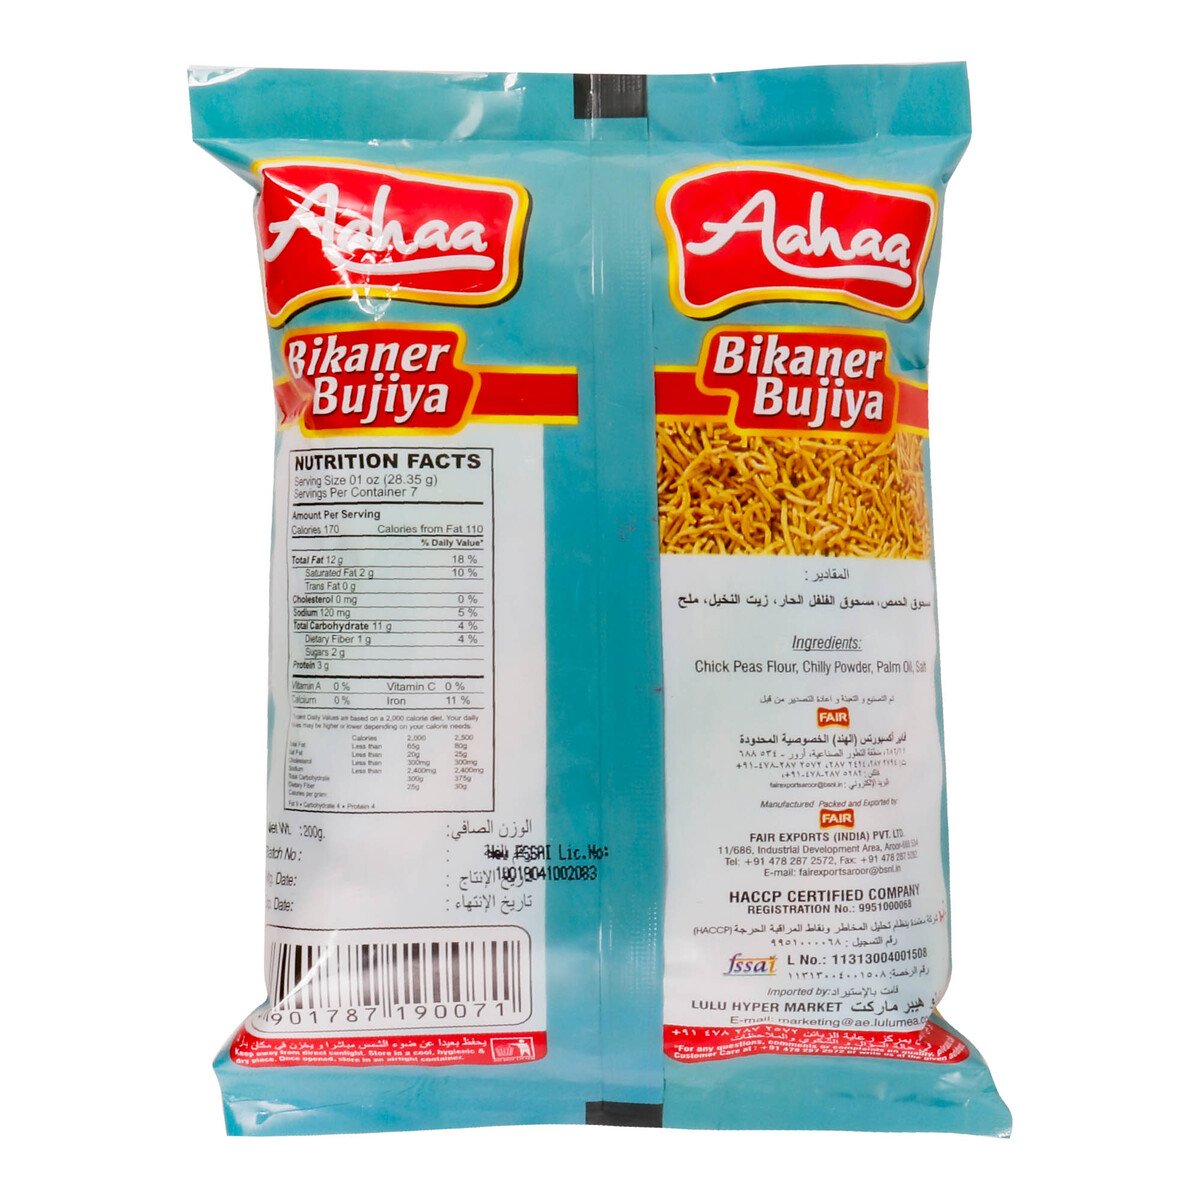 Aahaa Bikaner Bujiya Chips 200 g